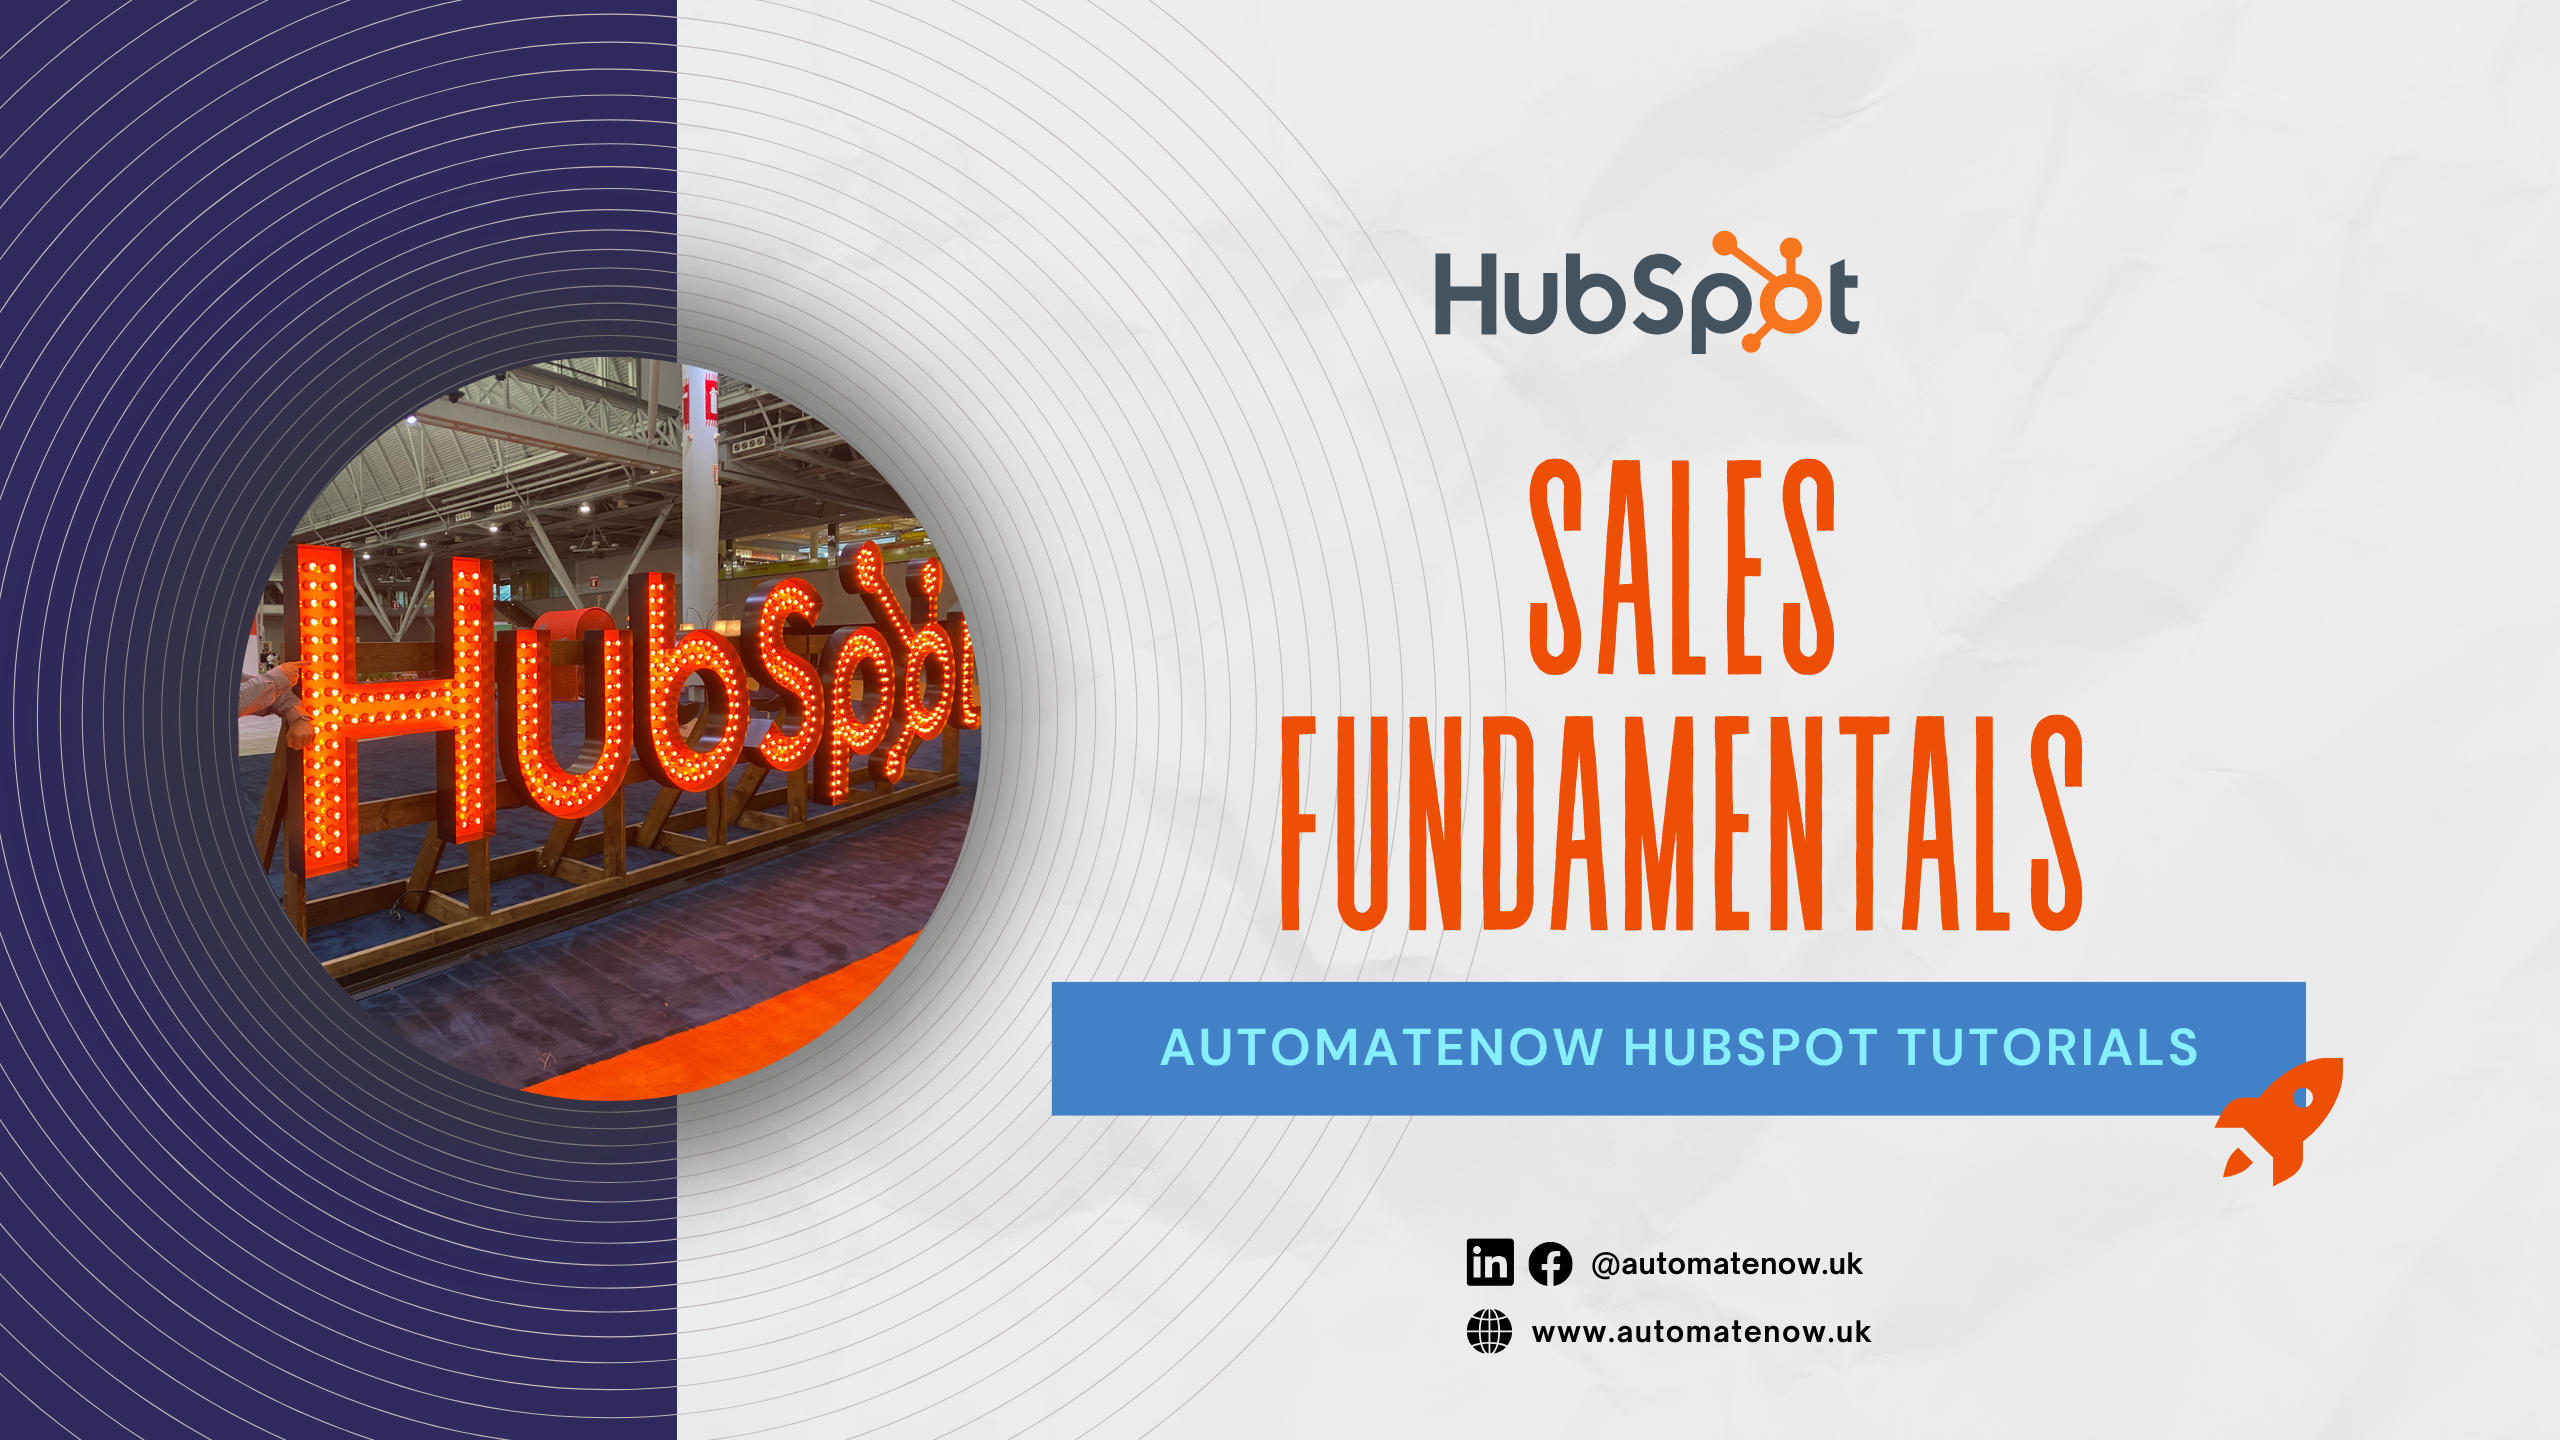 HubSpot Sales fundamentals